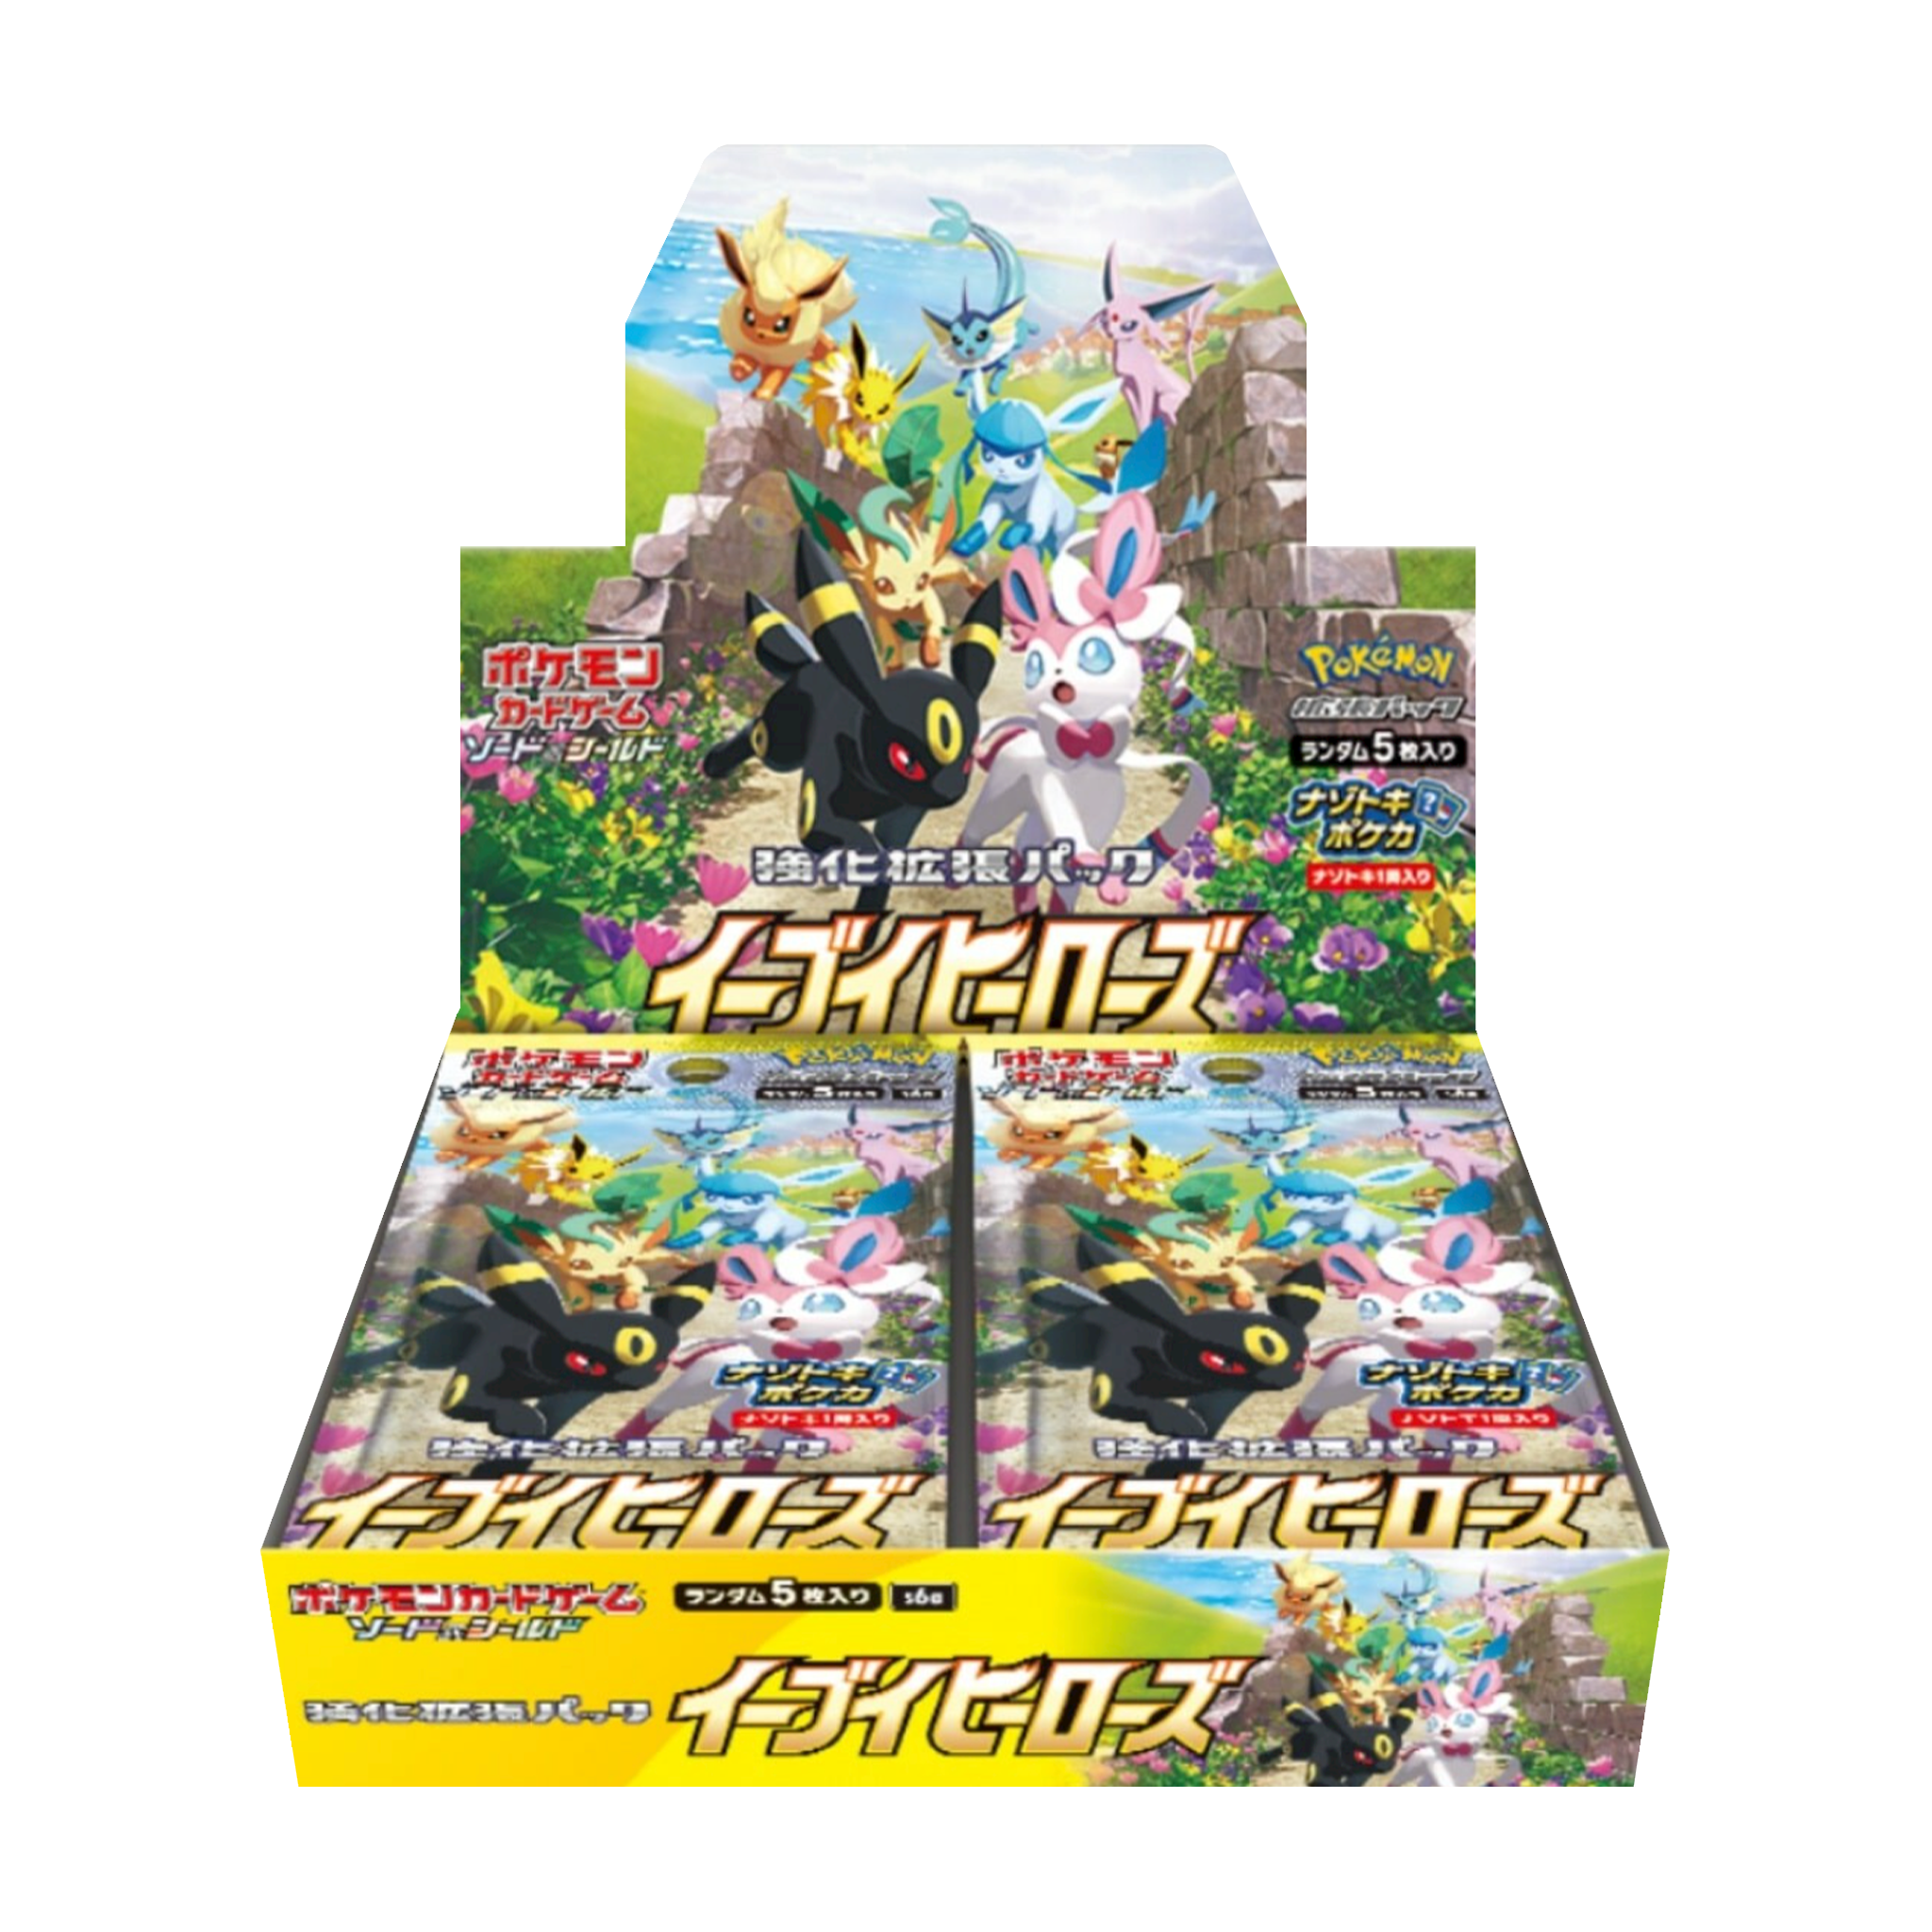 Pokemon Japanese Eevee Heroes Booster Box